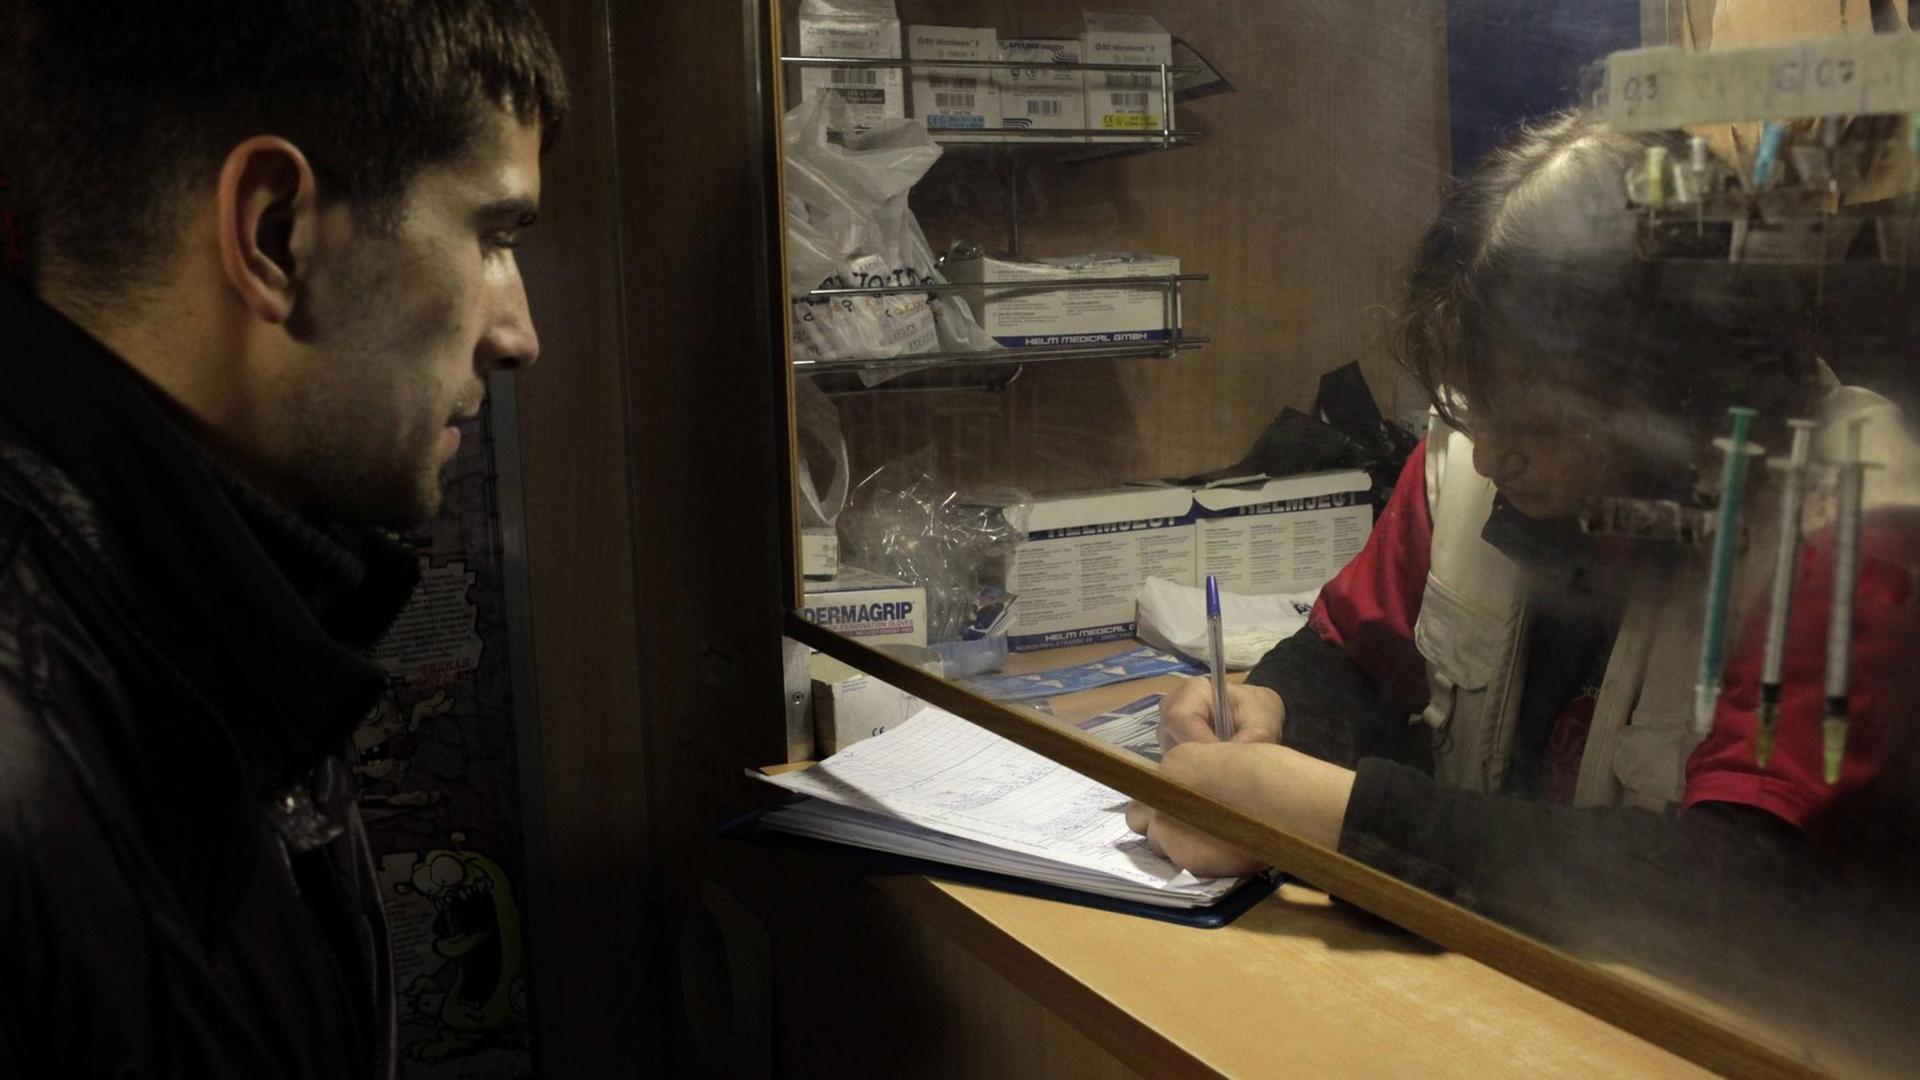 Heroinkranker Mann tauscht Nadeln bei einer mobilen medizinischen Einheit in St. Petersburg, Russland, aus. Fünfmal pro Woche bietet sie kostenlose Kondome, saubere Nadeln und Bluttests für HIV und Hepatitis an. 28.10.2010